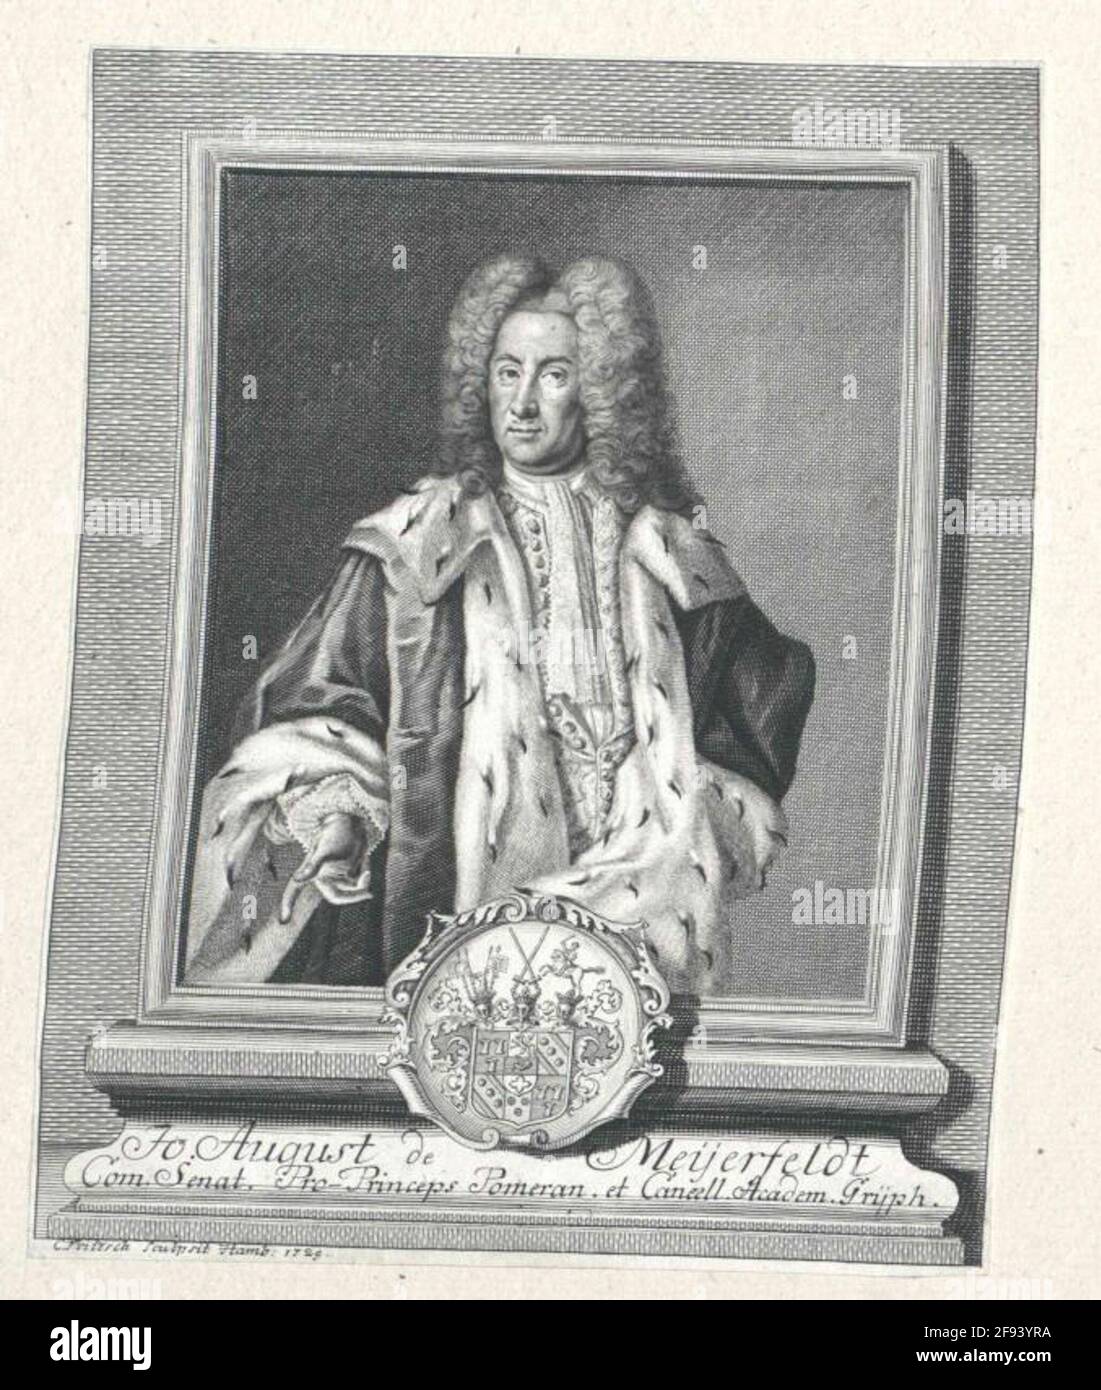 Meyerfeldt, Johann August Graf von. Stock Photo